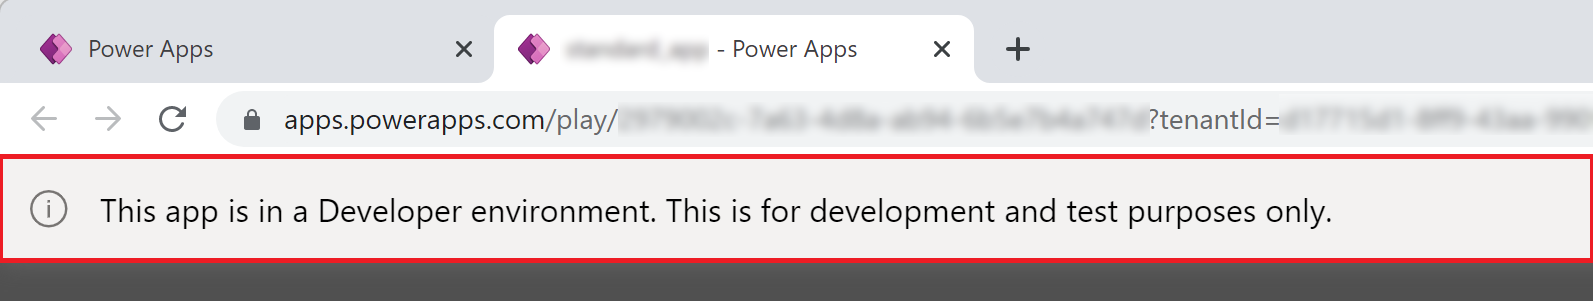 Power Apps-banner til appen for utviklermiljø.